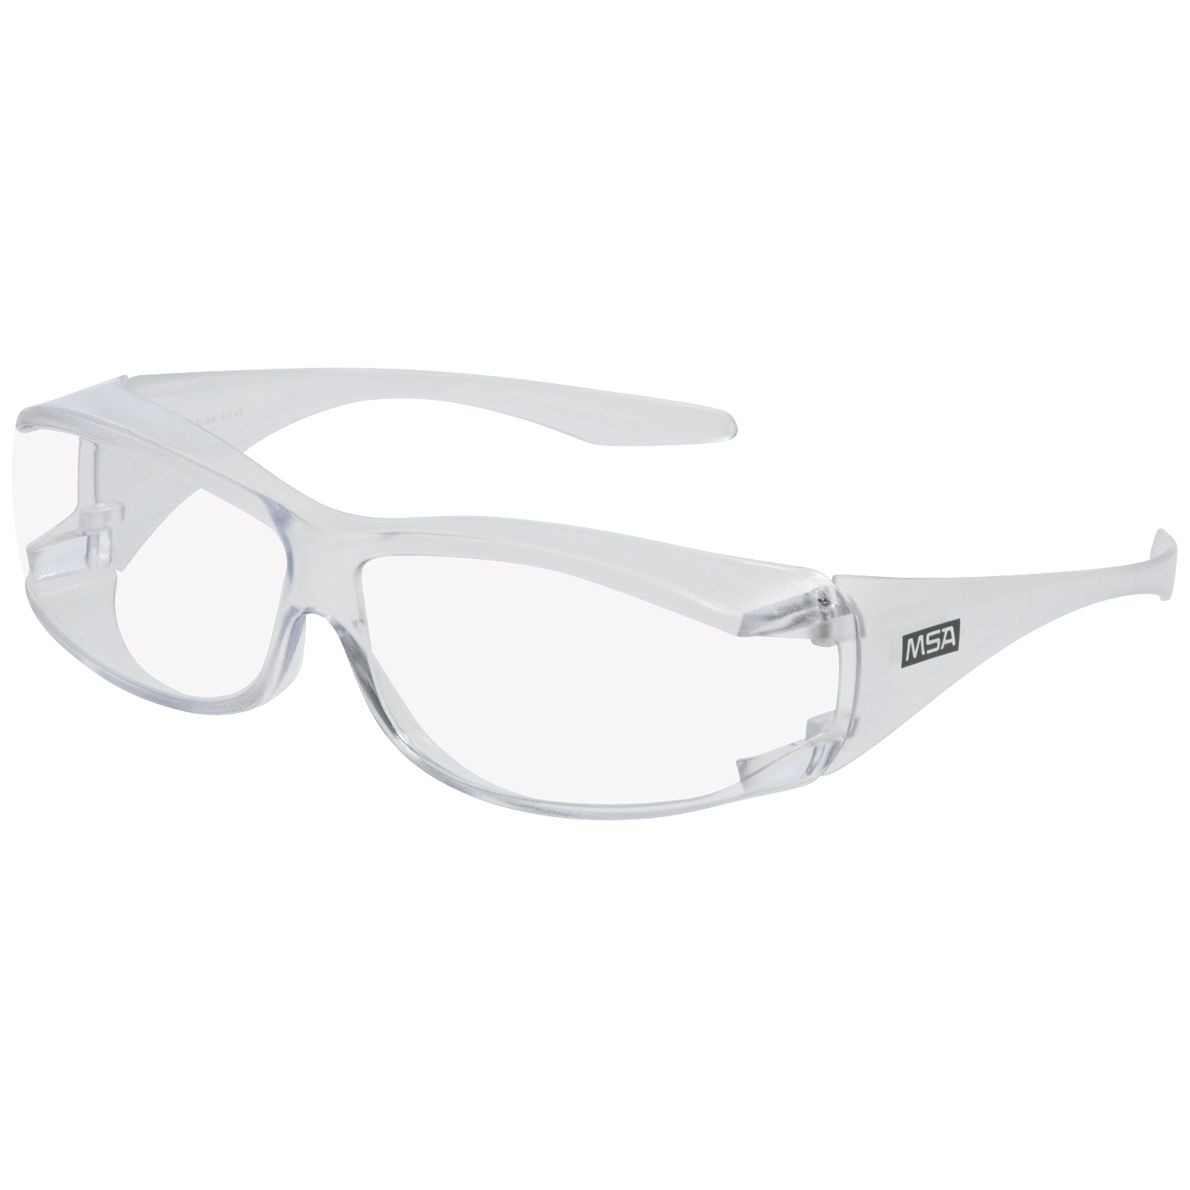 MSA OverG Vollsicht-Schutzbrille - für Brillenträger - kratz- & beschlagfest dank TuffStuff - EN 166/170 - Weiß/Klar